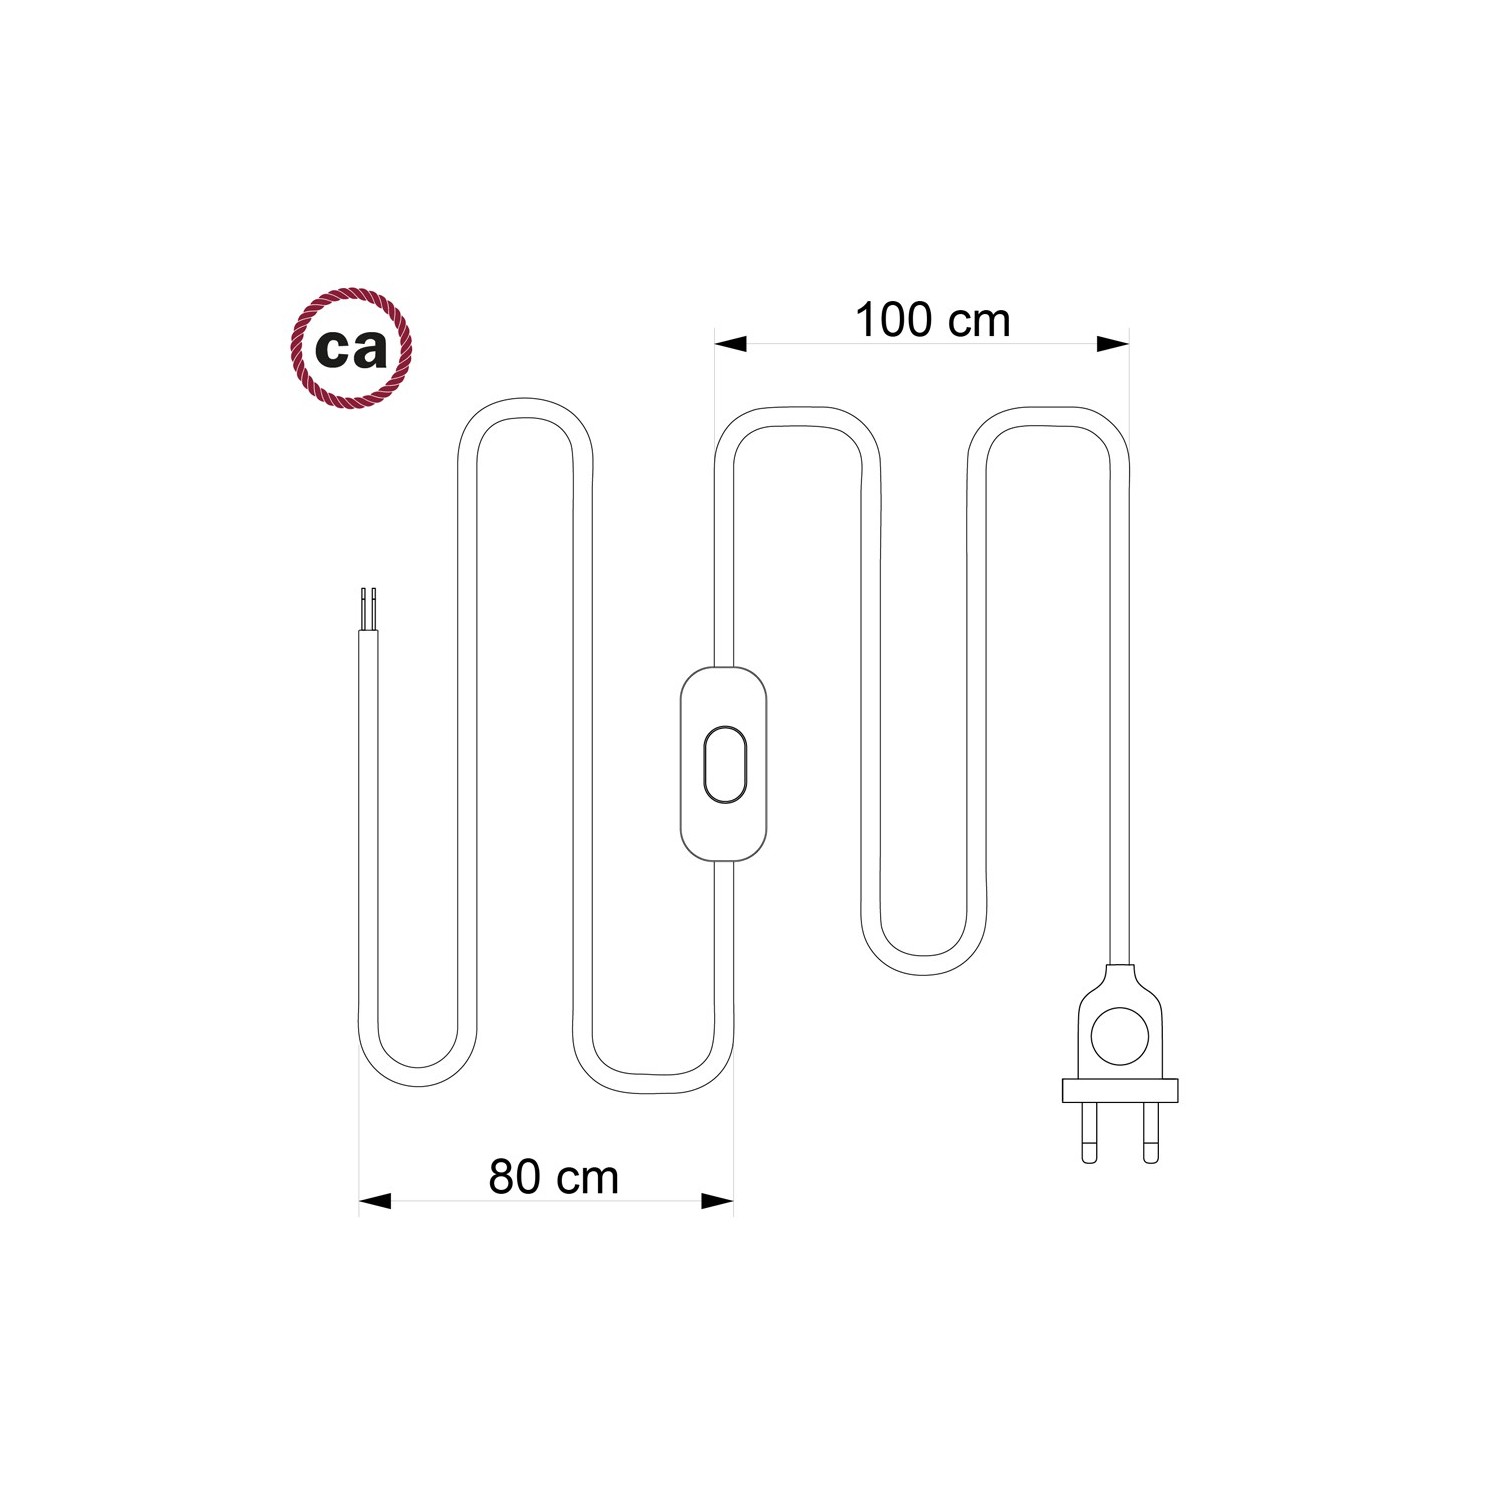 Cordon pour lampe, câble TM00 Effet Soie Ivoire 1,80 m. Choisissez la couleur de la fiche et de l'interrupteur!